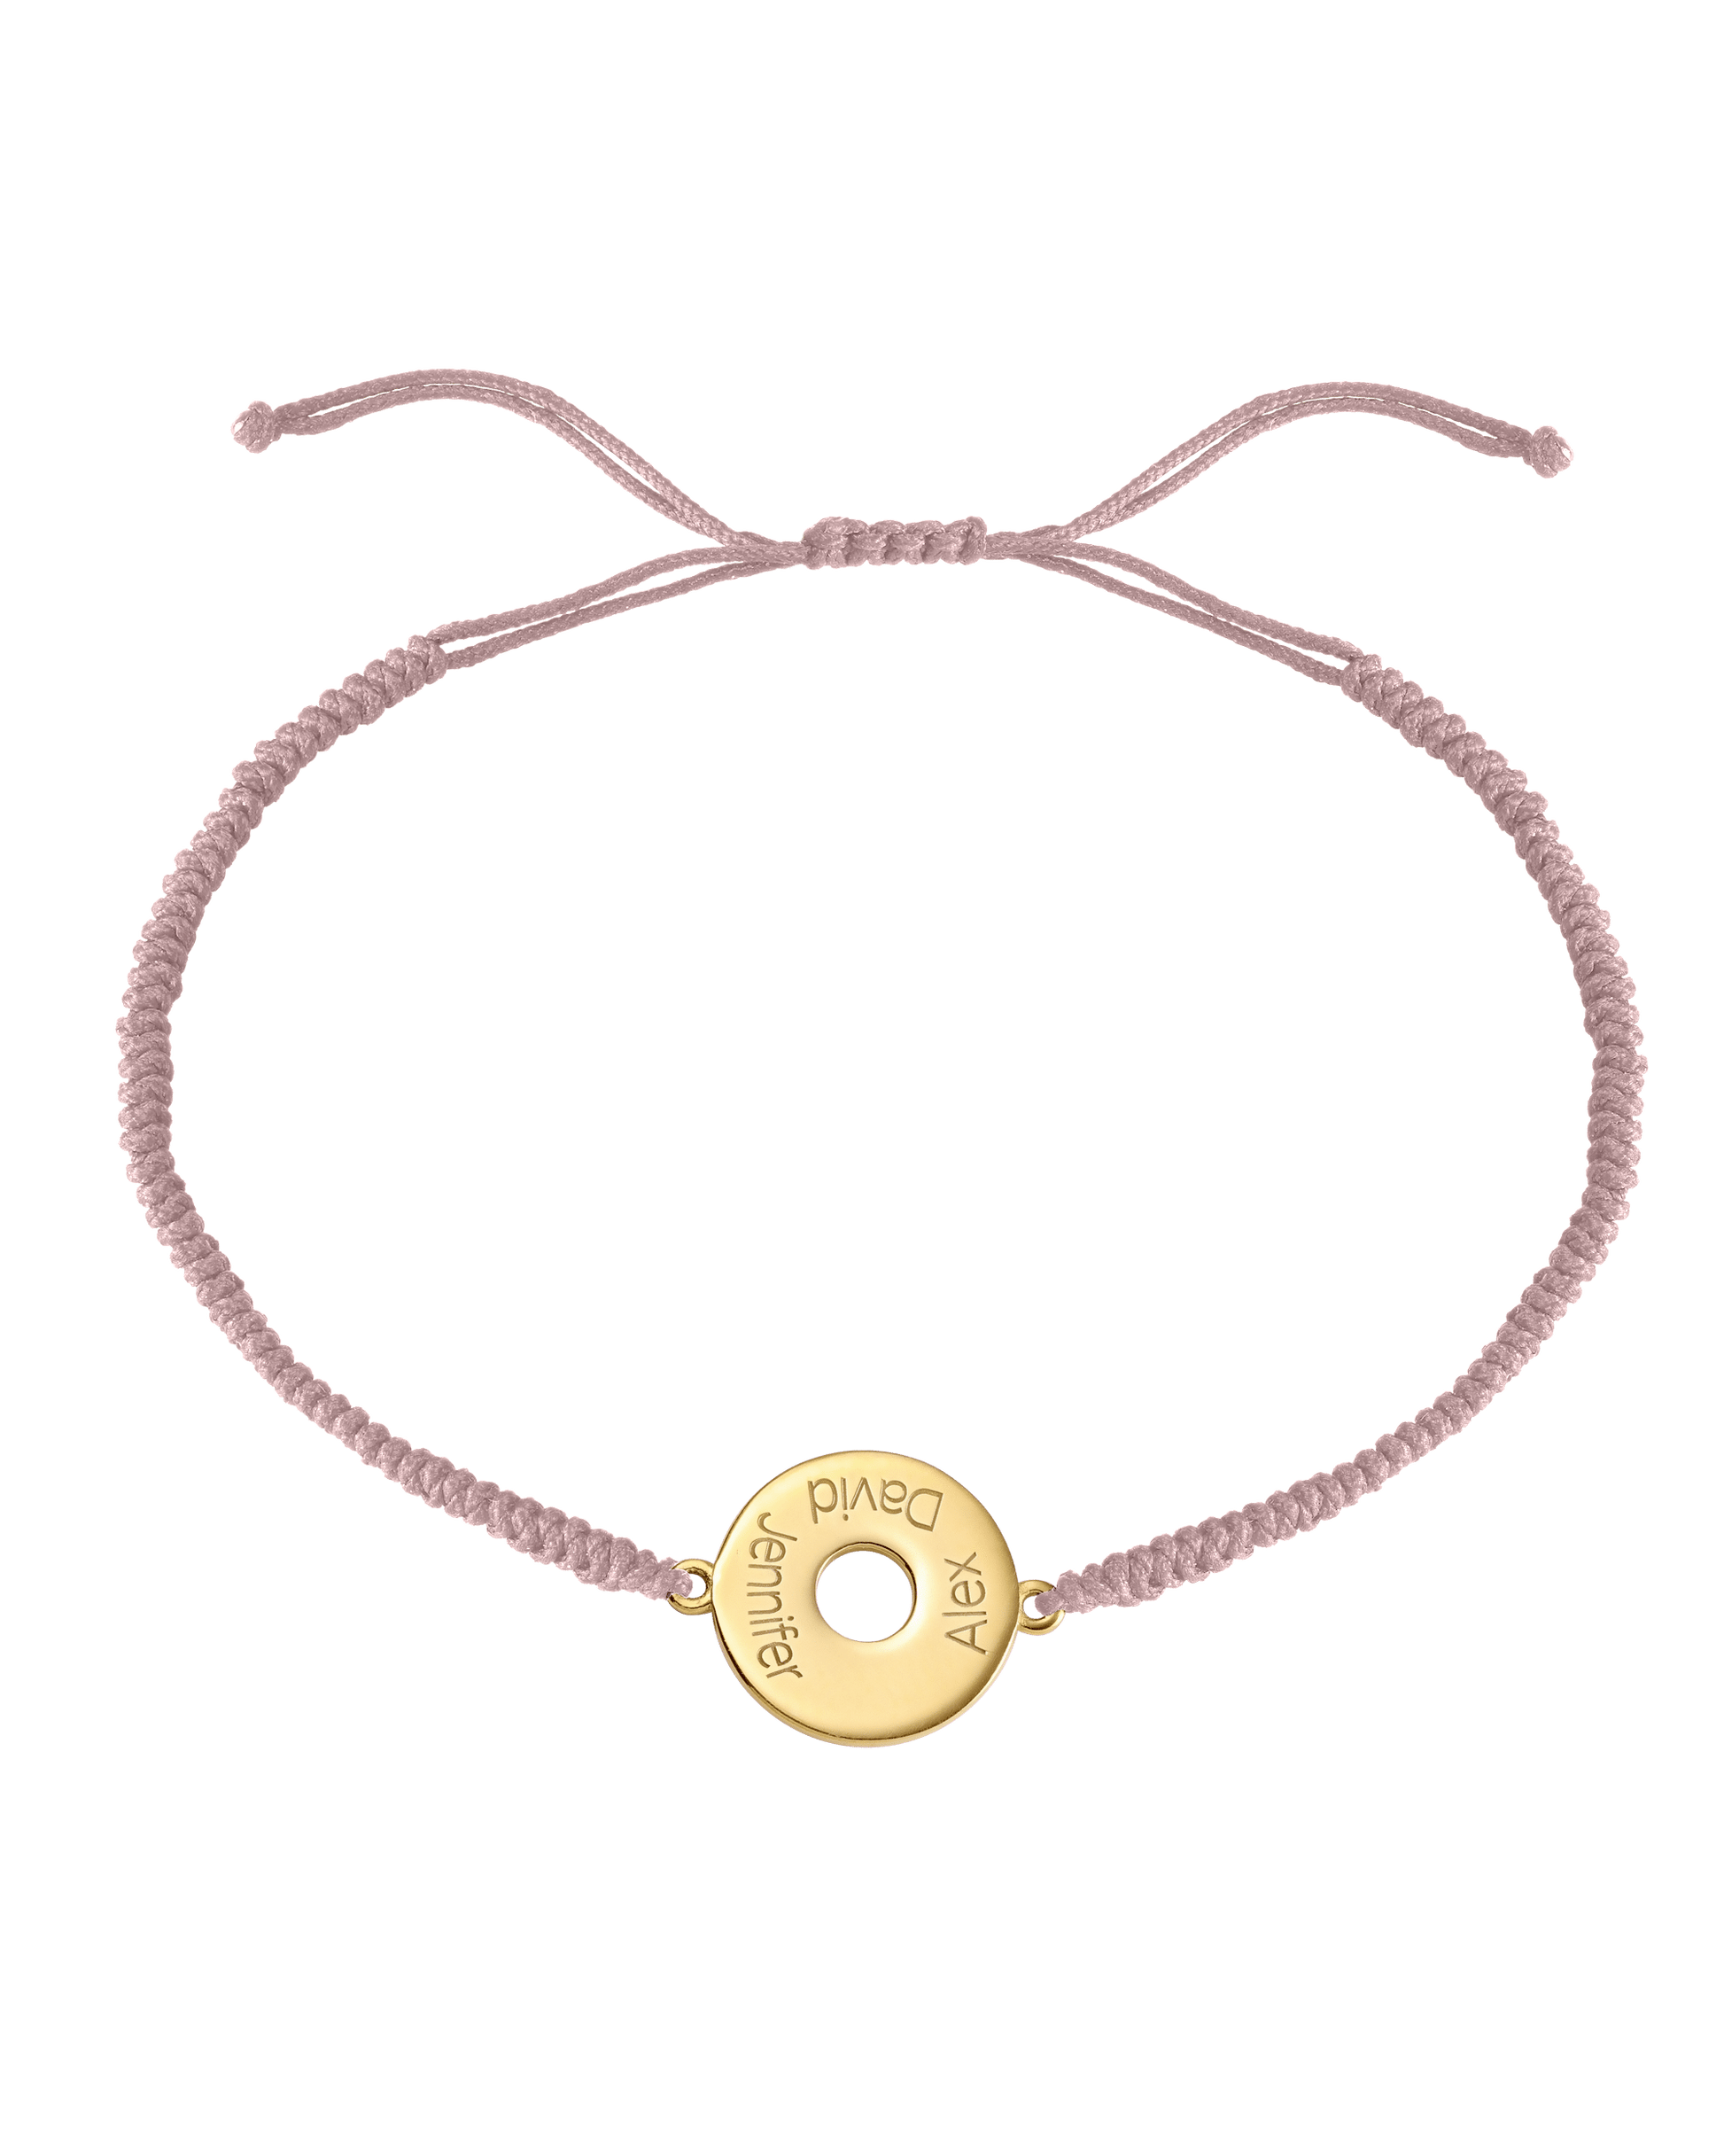 Donut Cord Bracelet - 18K Gold Vermeil Bracelets magal-dev Light Pink 1 Name Adjustable from 4" to 9"